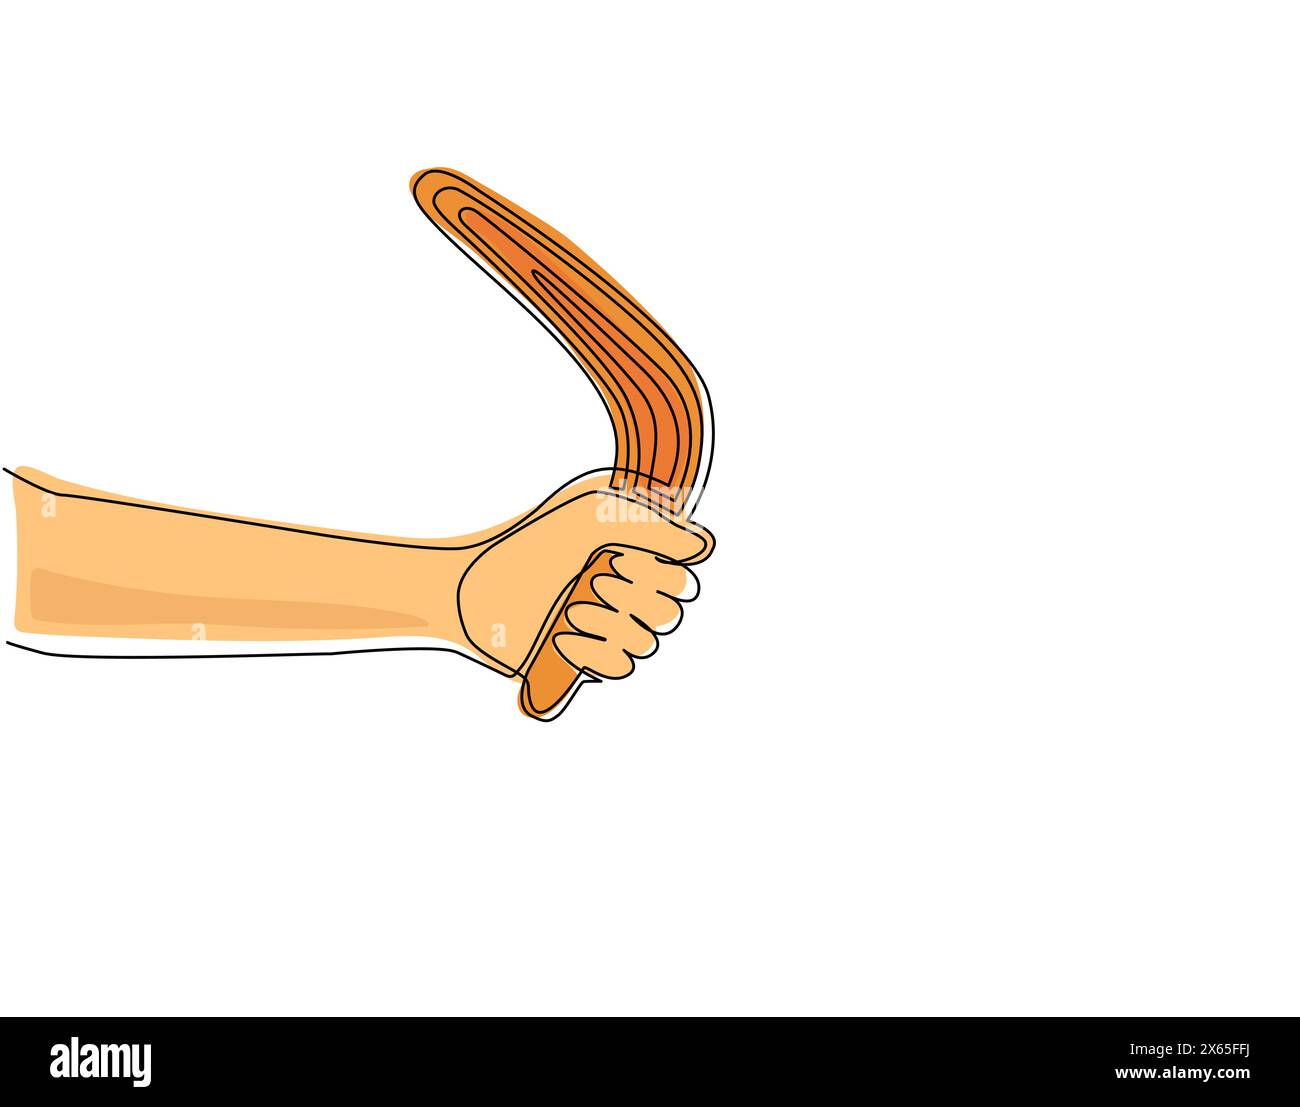 Une seule ligne dessinant la main tenant le boomerang, ancien outil de chasse aborigène d'Australie. Souvenir traditionnel, symboles indigènes australiens. Conti Illustration de Vecteur